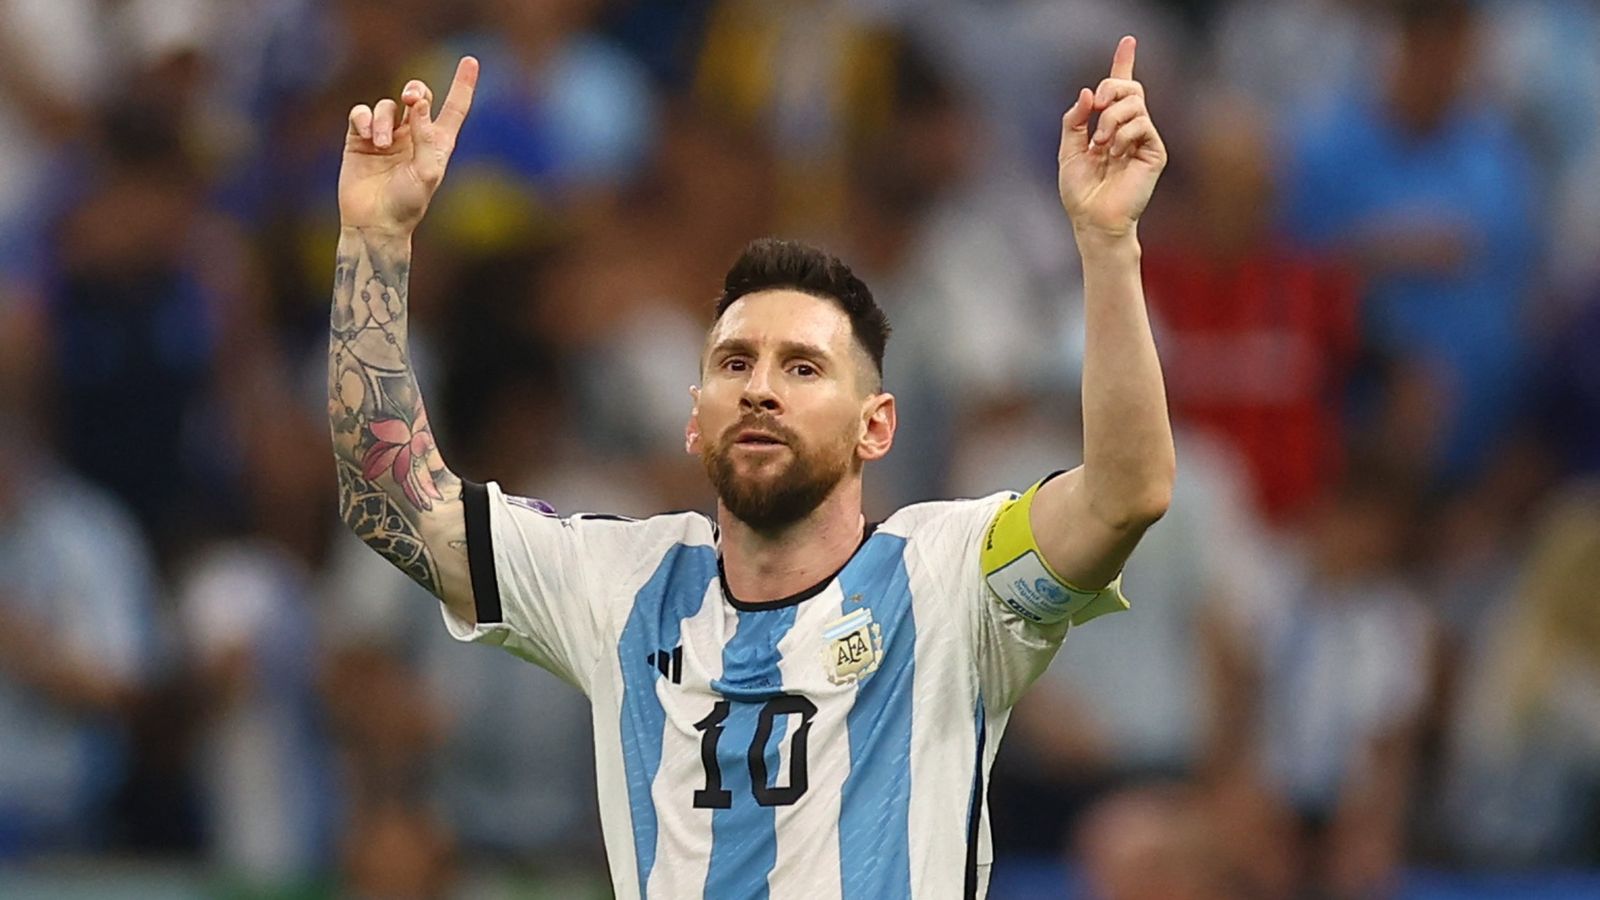 Tiểu sử Messi - Huyền thoại bóng đá Argentina